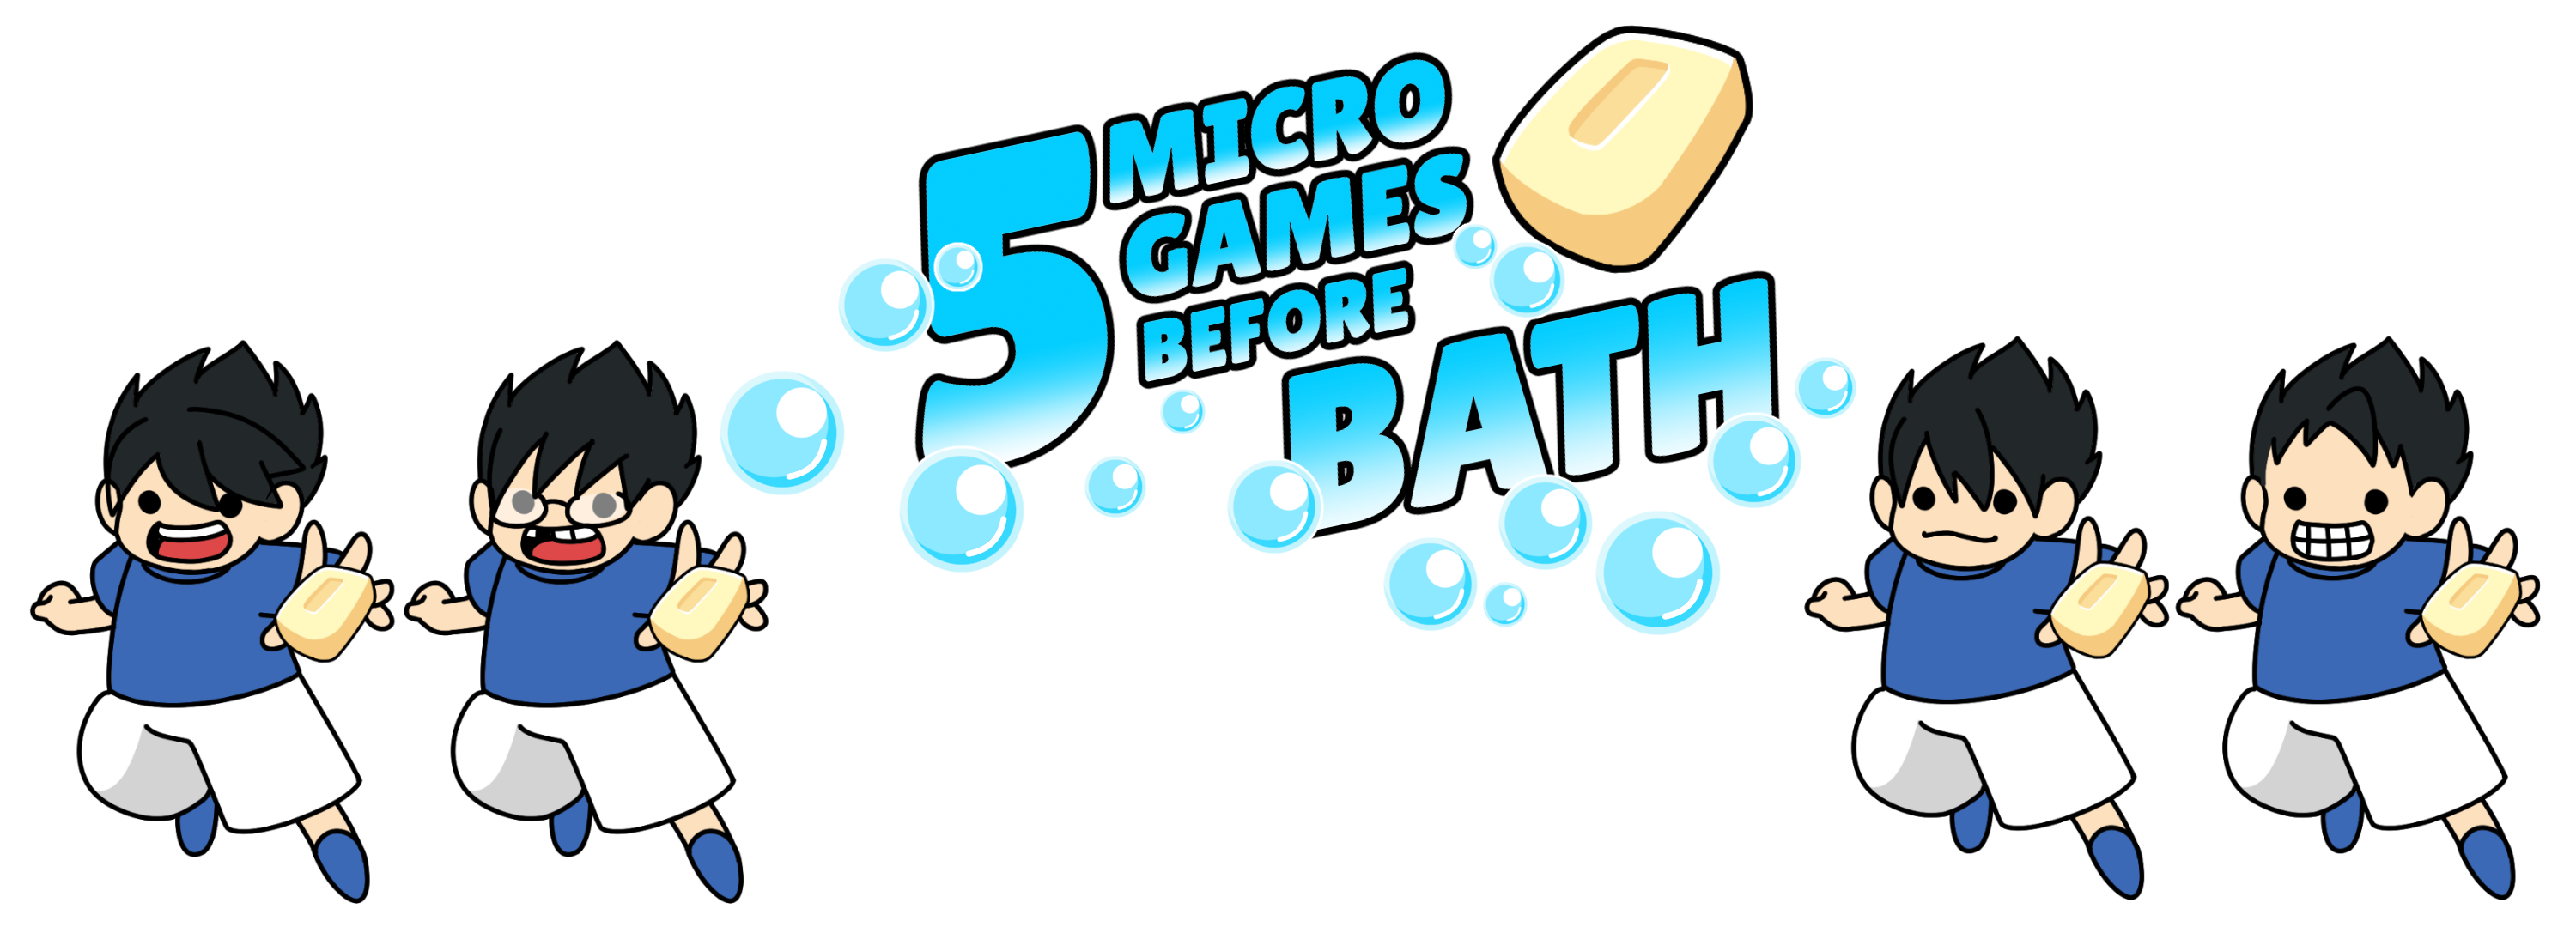 5 Micro Games Before Bath